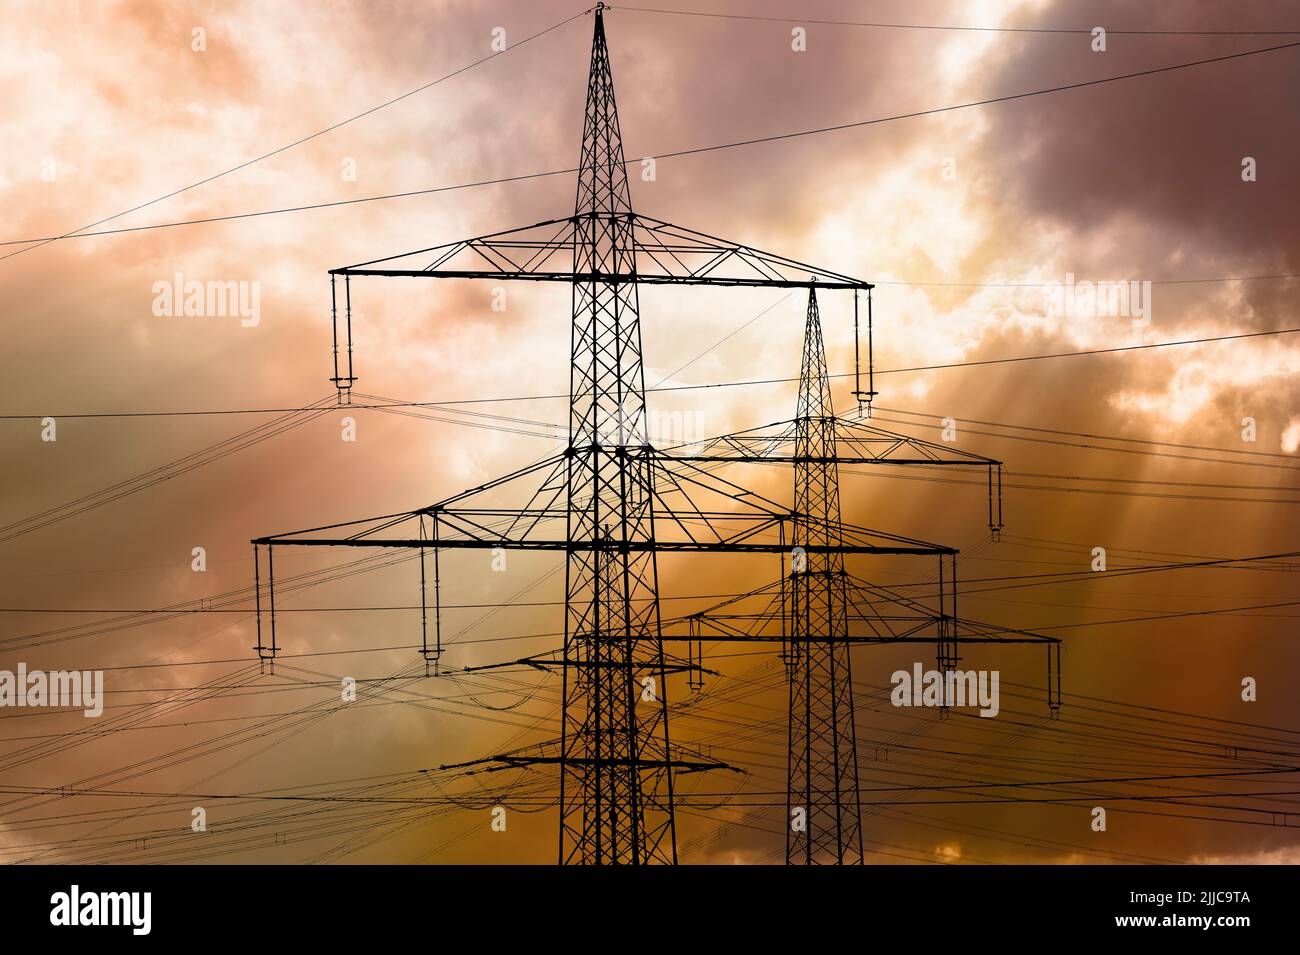 Viele elektrisierende Pole vor dem Himmel mit Wolken Stockfoto